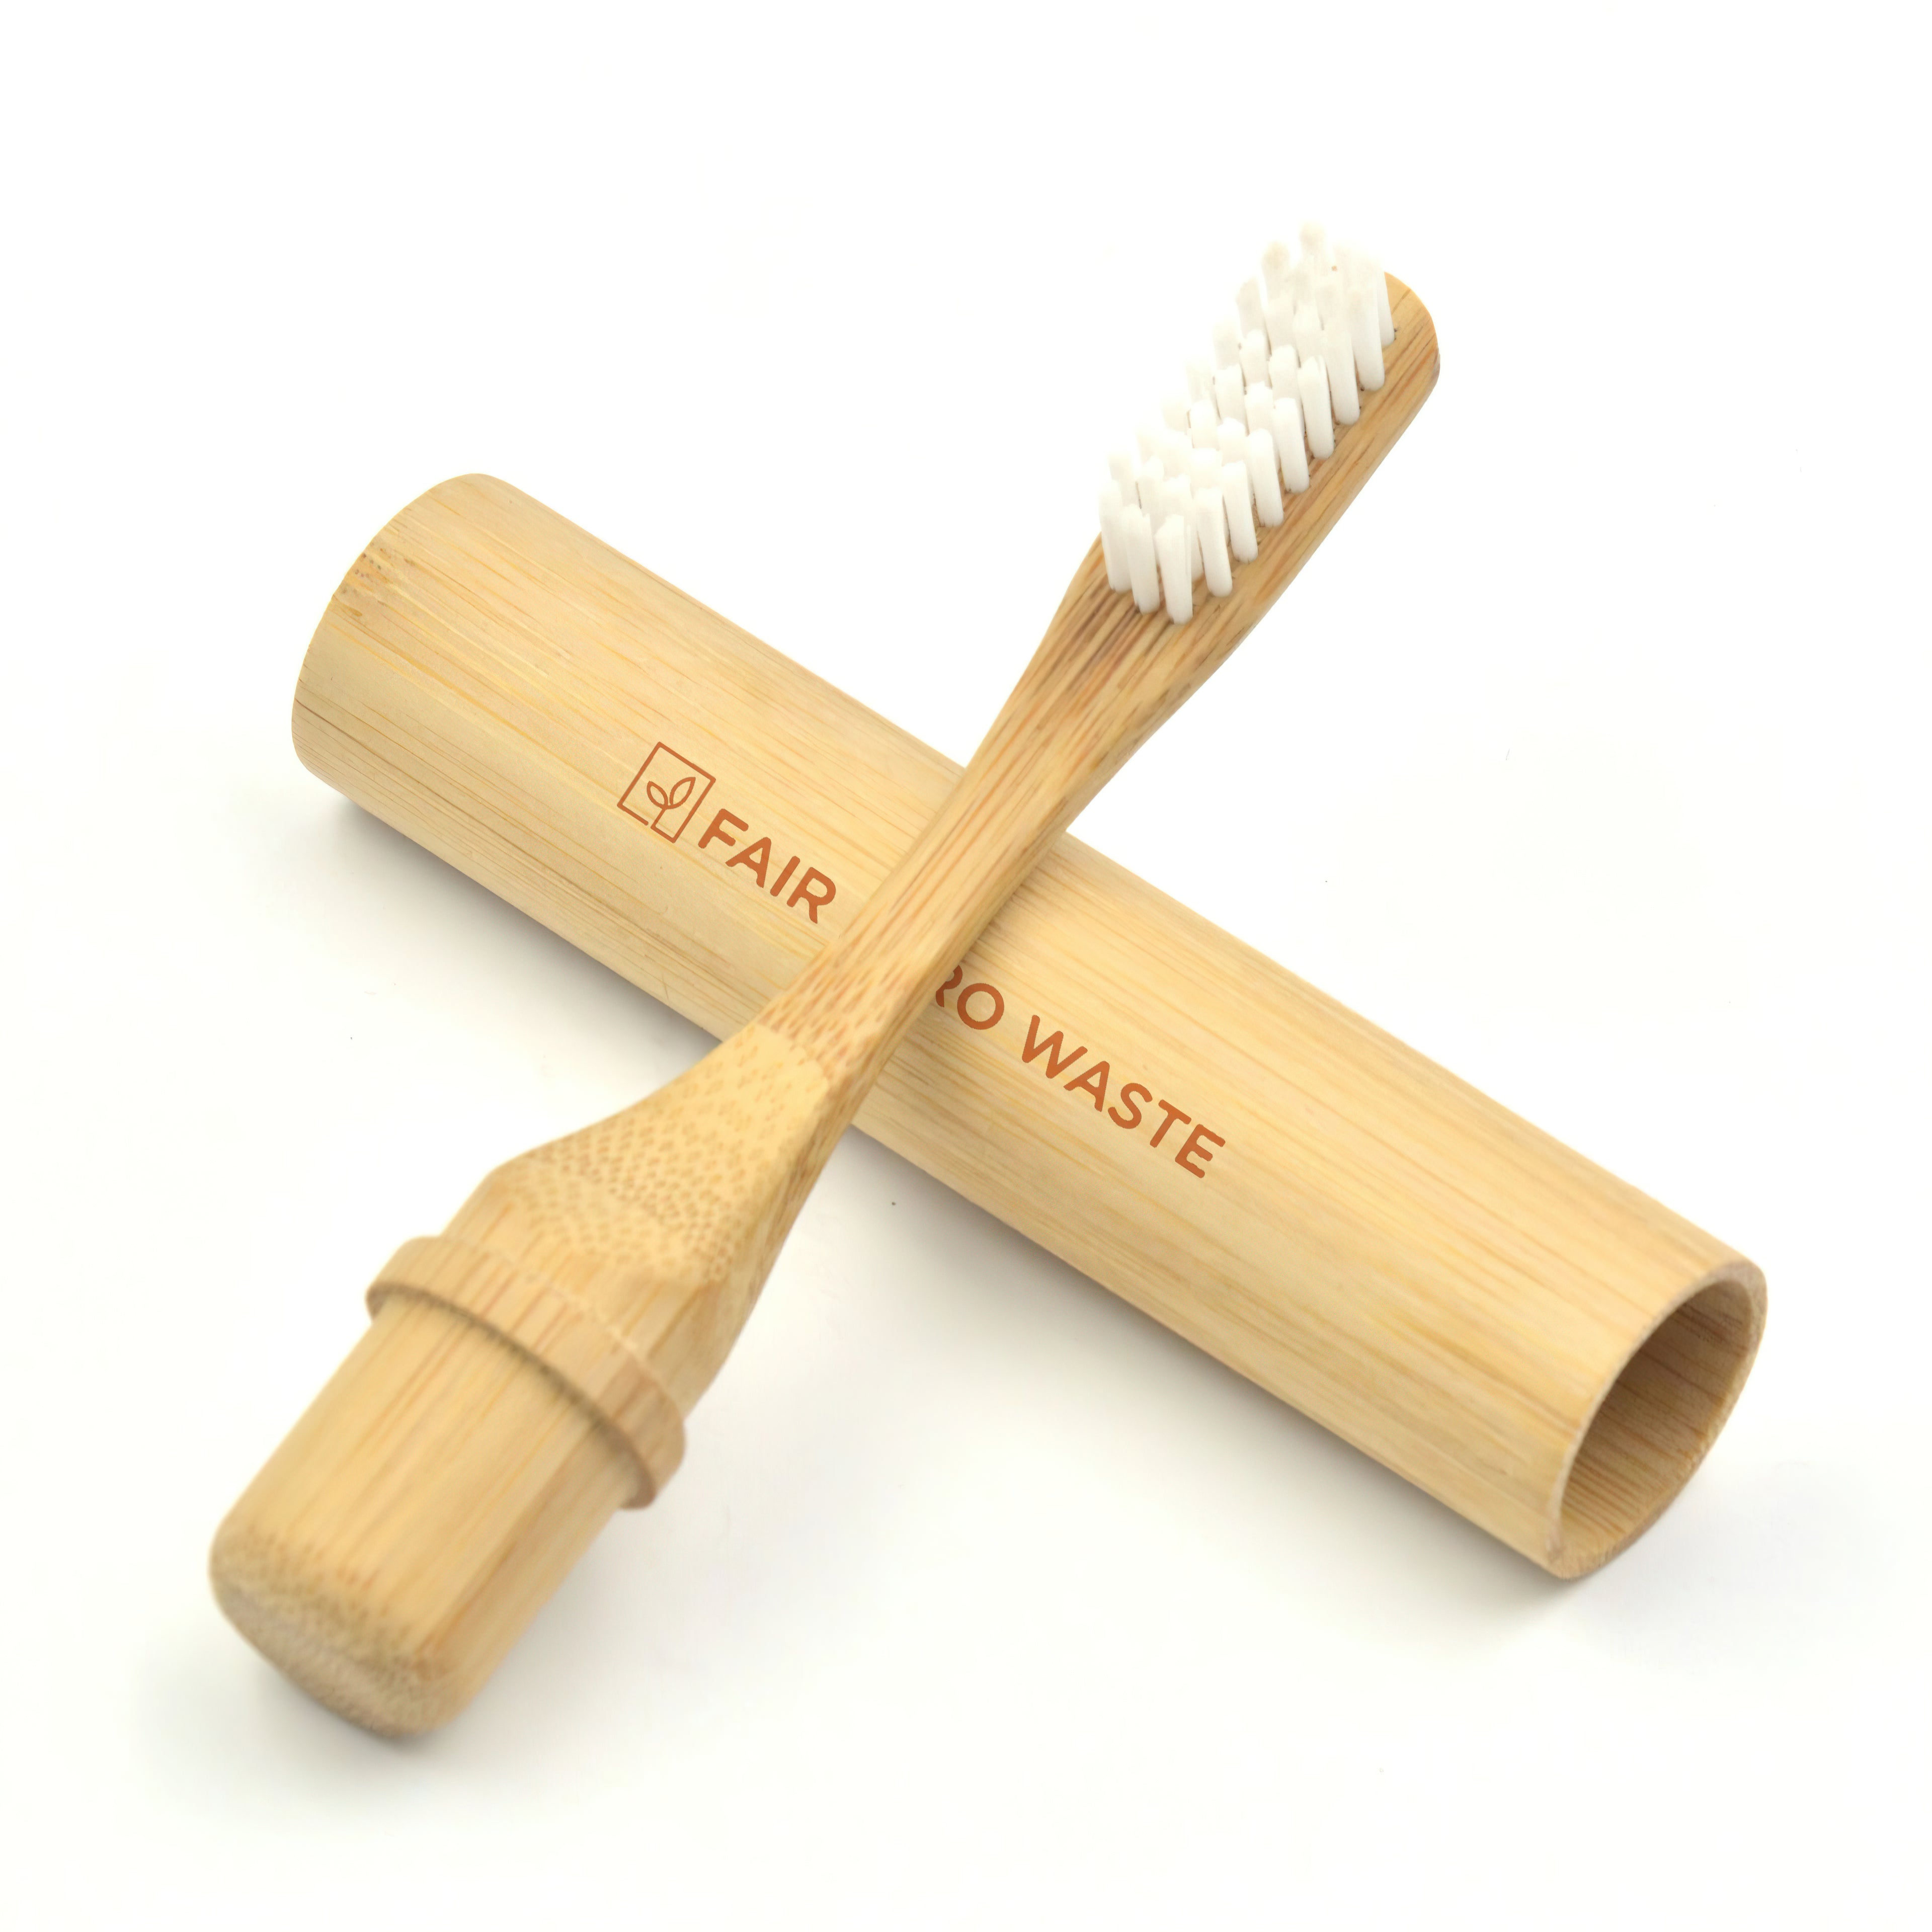 Estuche de bambú para cepillo de dientes • Usar y Reusar